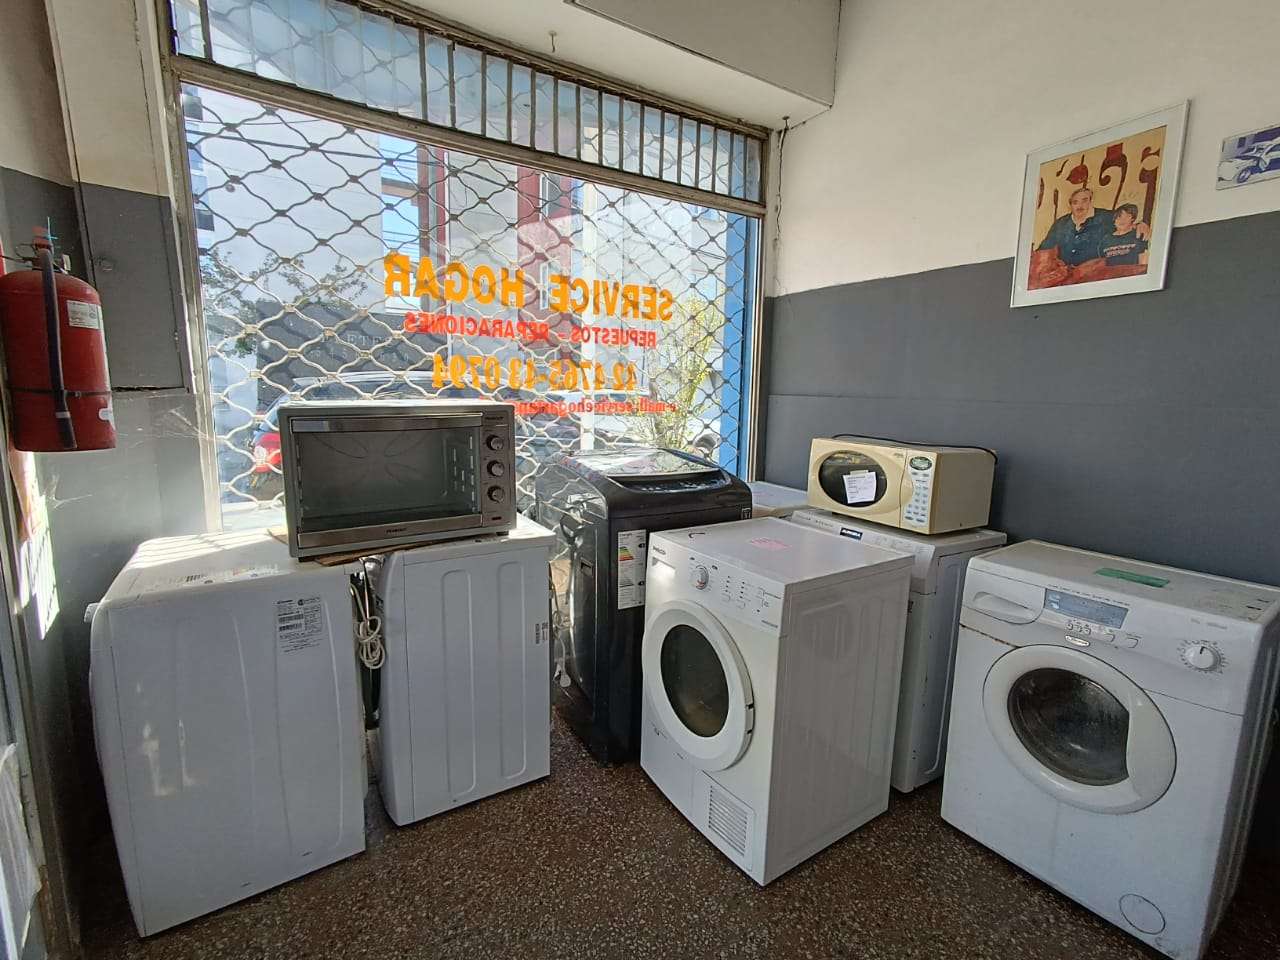 Arreglar los rulemanes de los lavarropas puede costar entre 90 mil y 140 mil pesos.